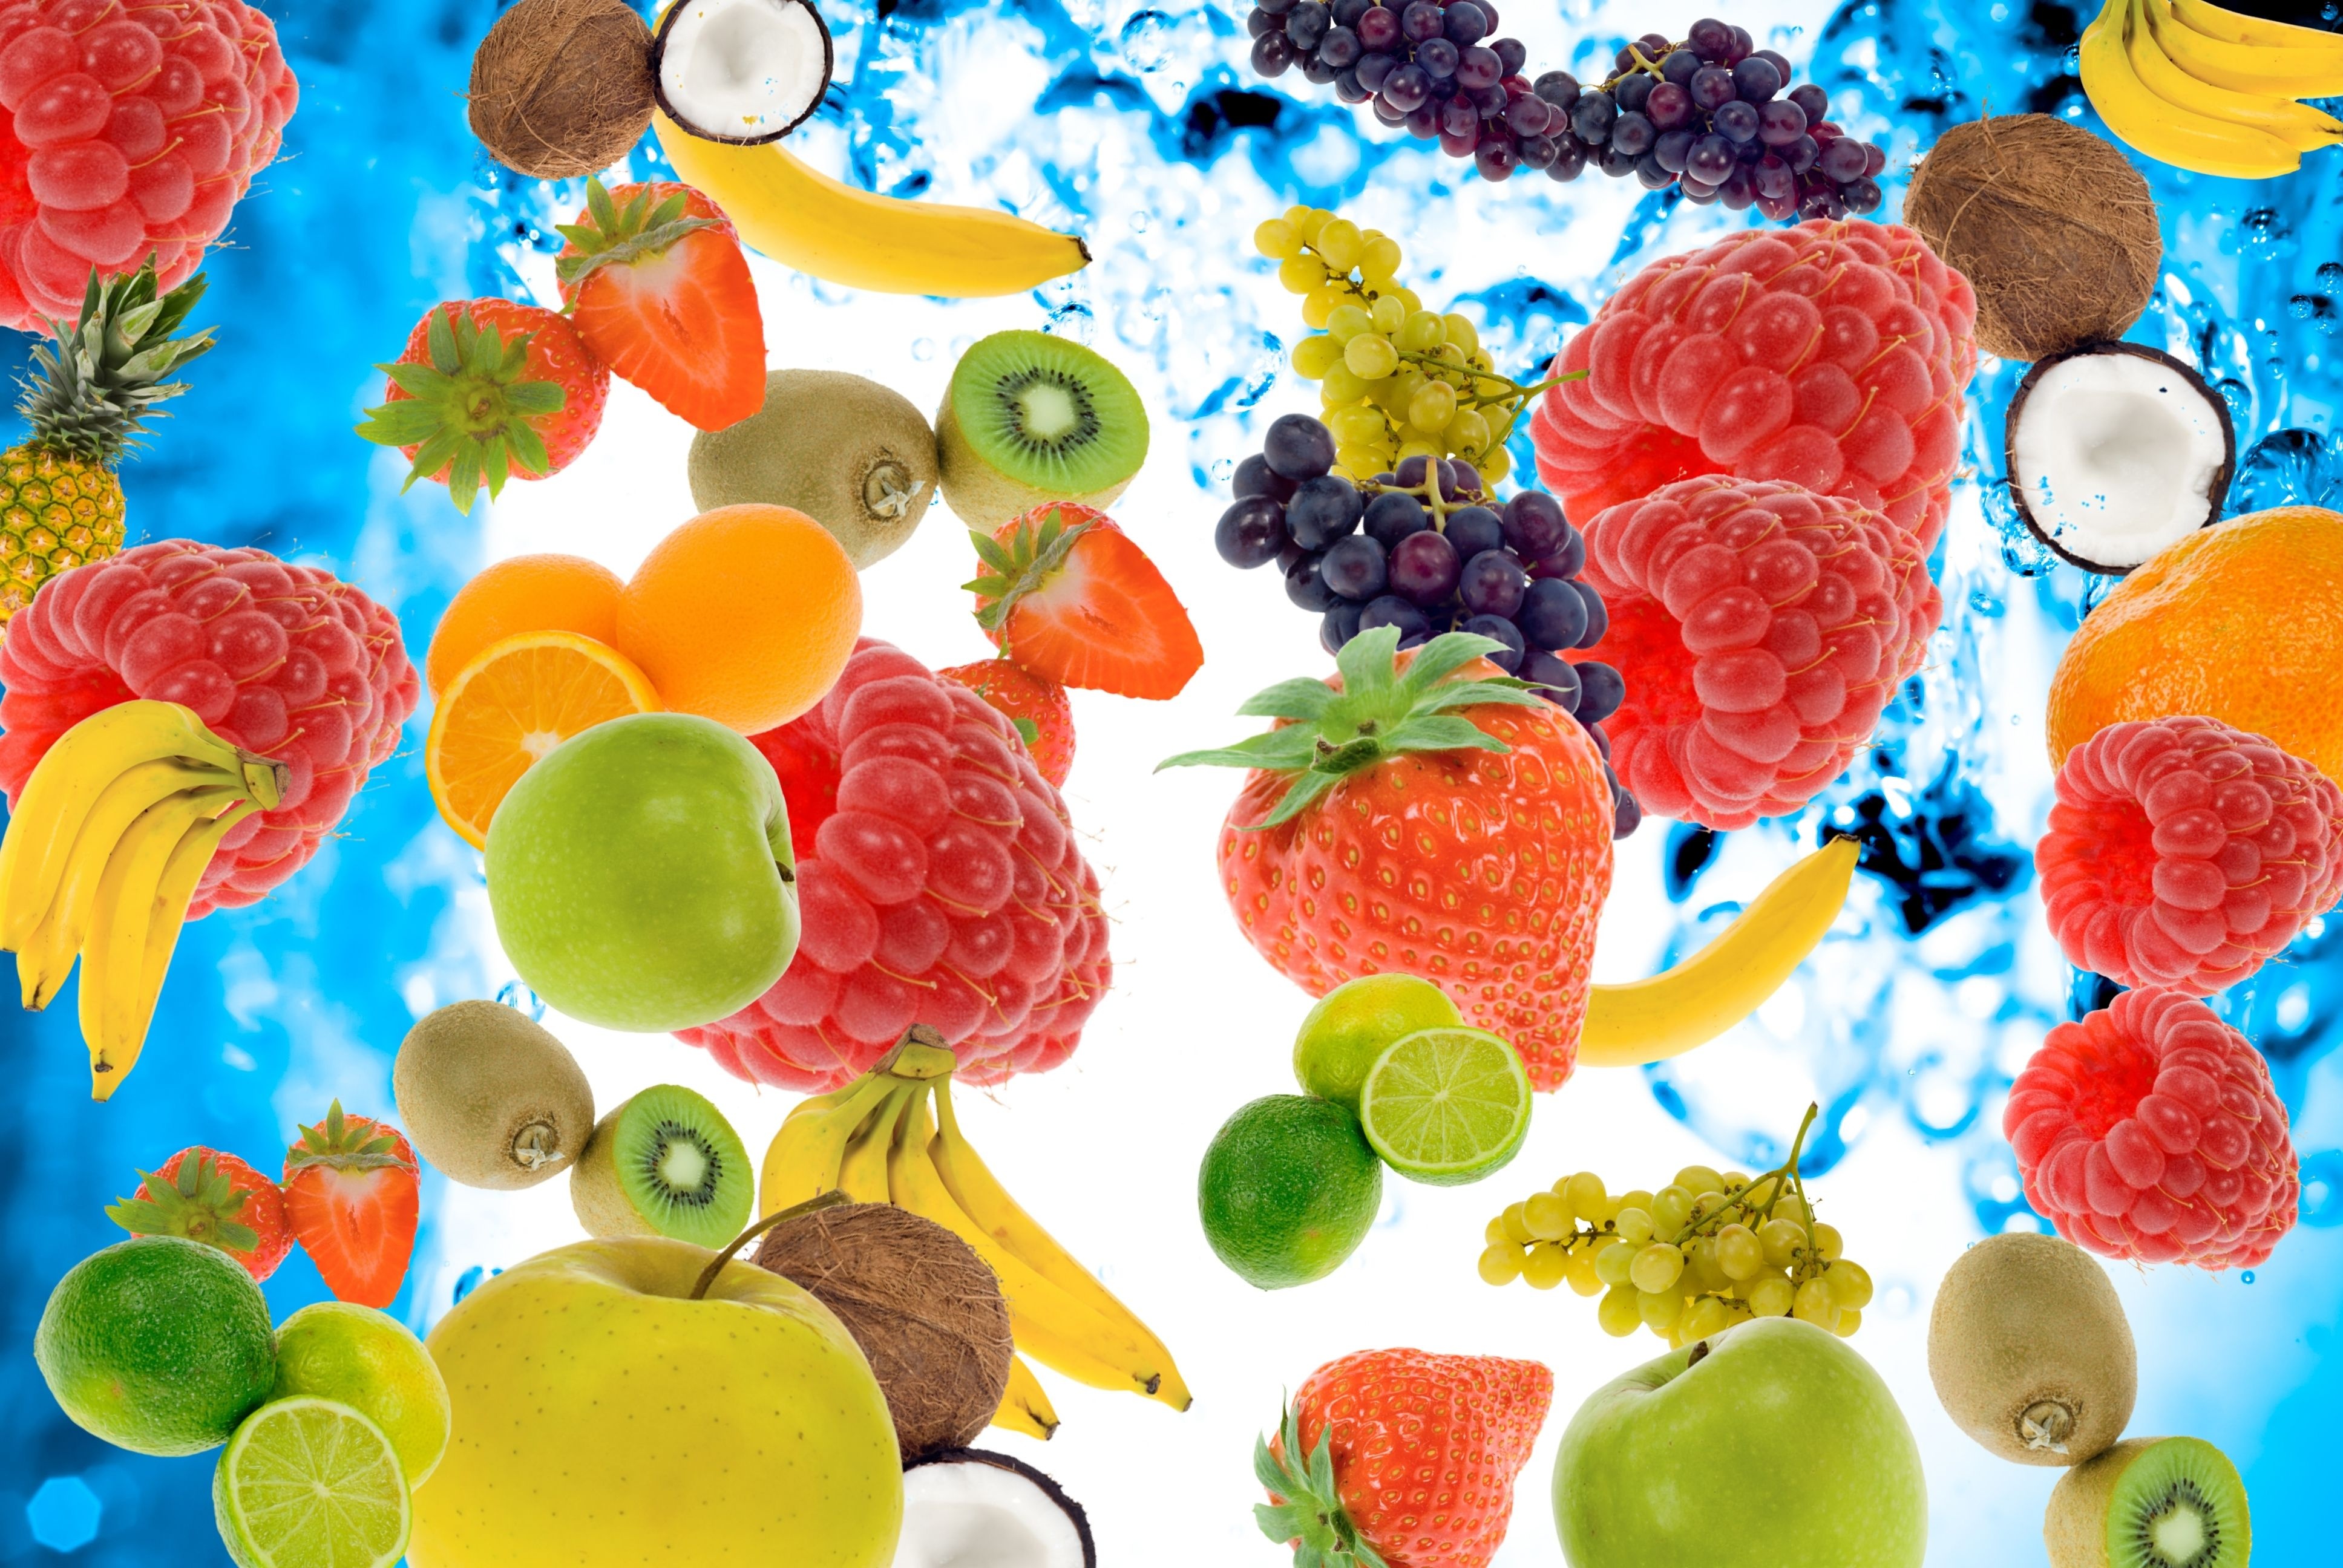 Frutas con poca fructosa